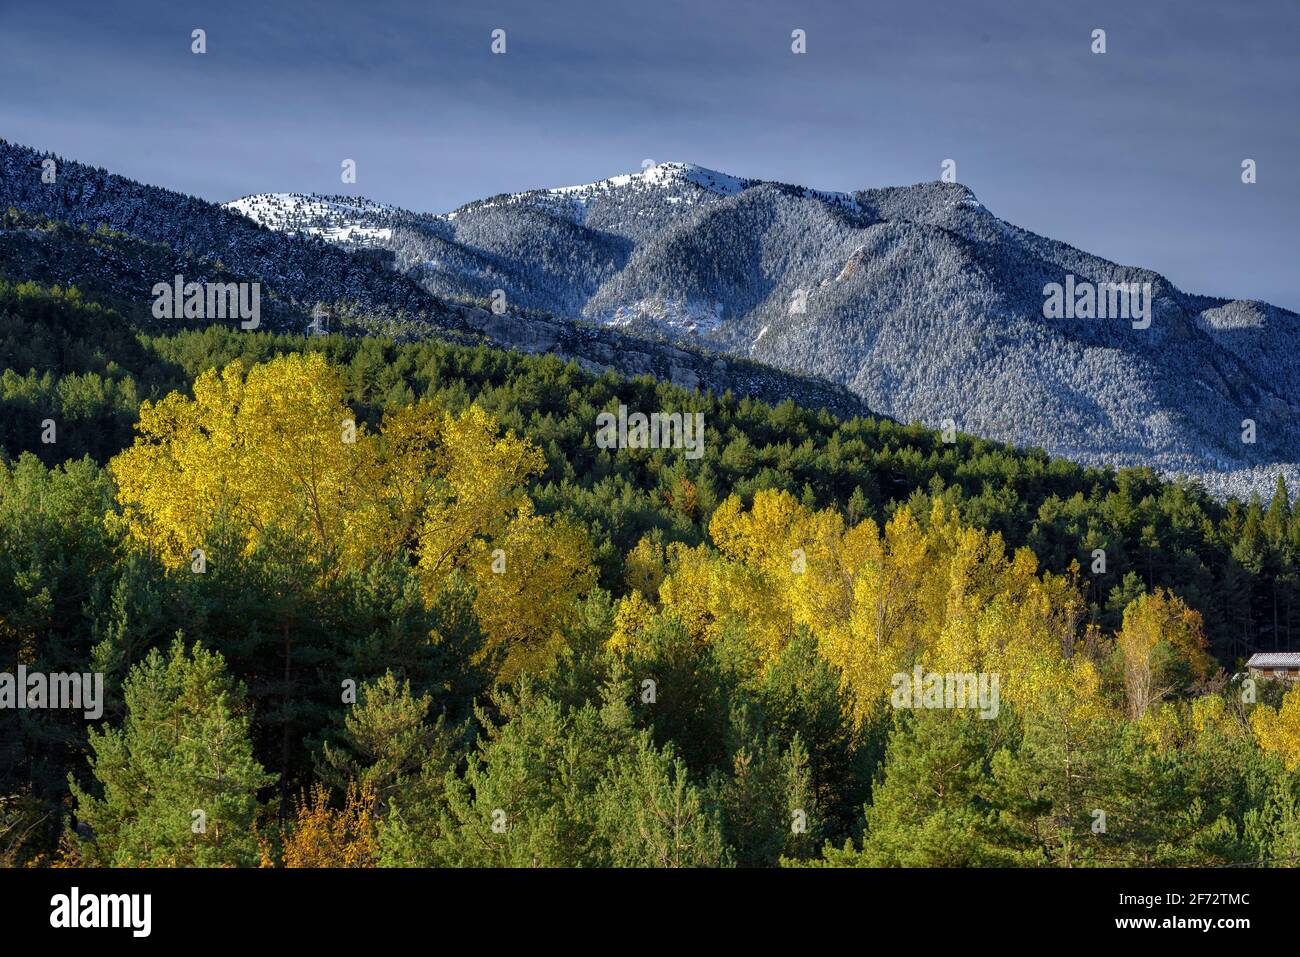 La catena Serra d'Ensija e la Gallina Pelada dopo le prime nevicate in autunno. Visto da vicino Maçaners (provincia di Barcellona, Catalogna, Pirenei) Foto Stock